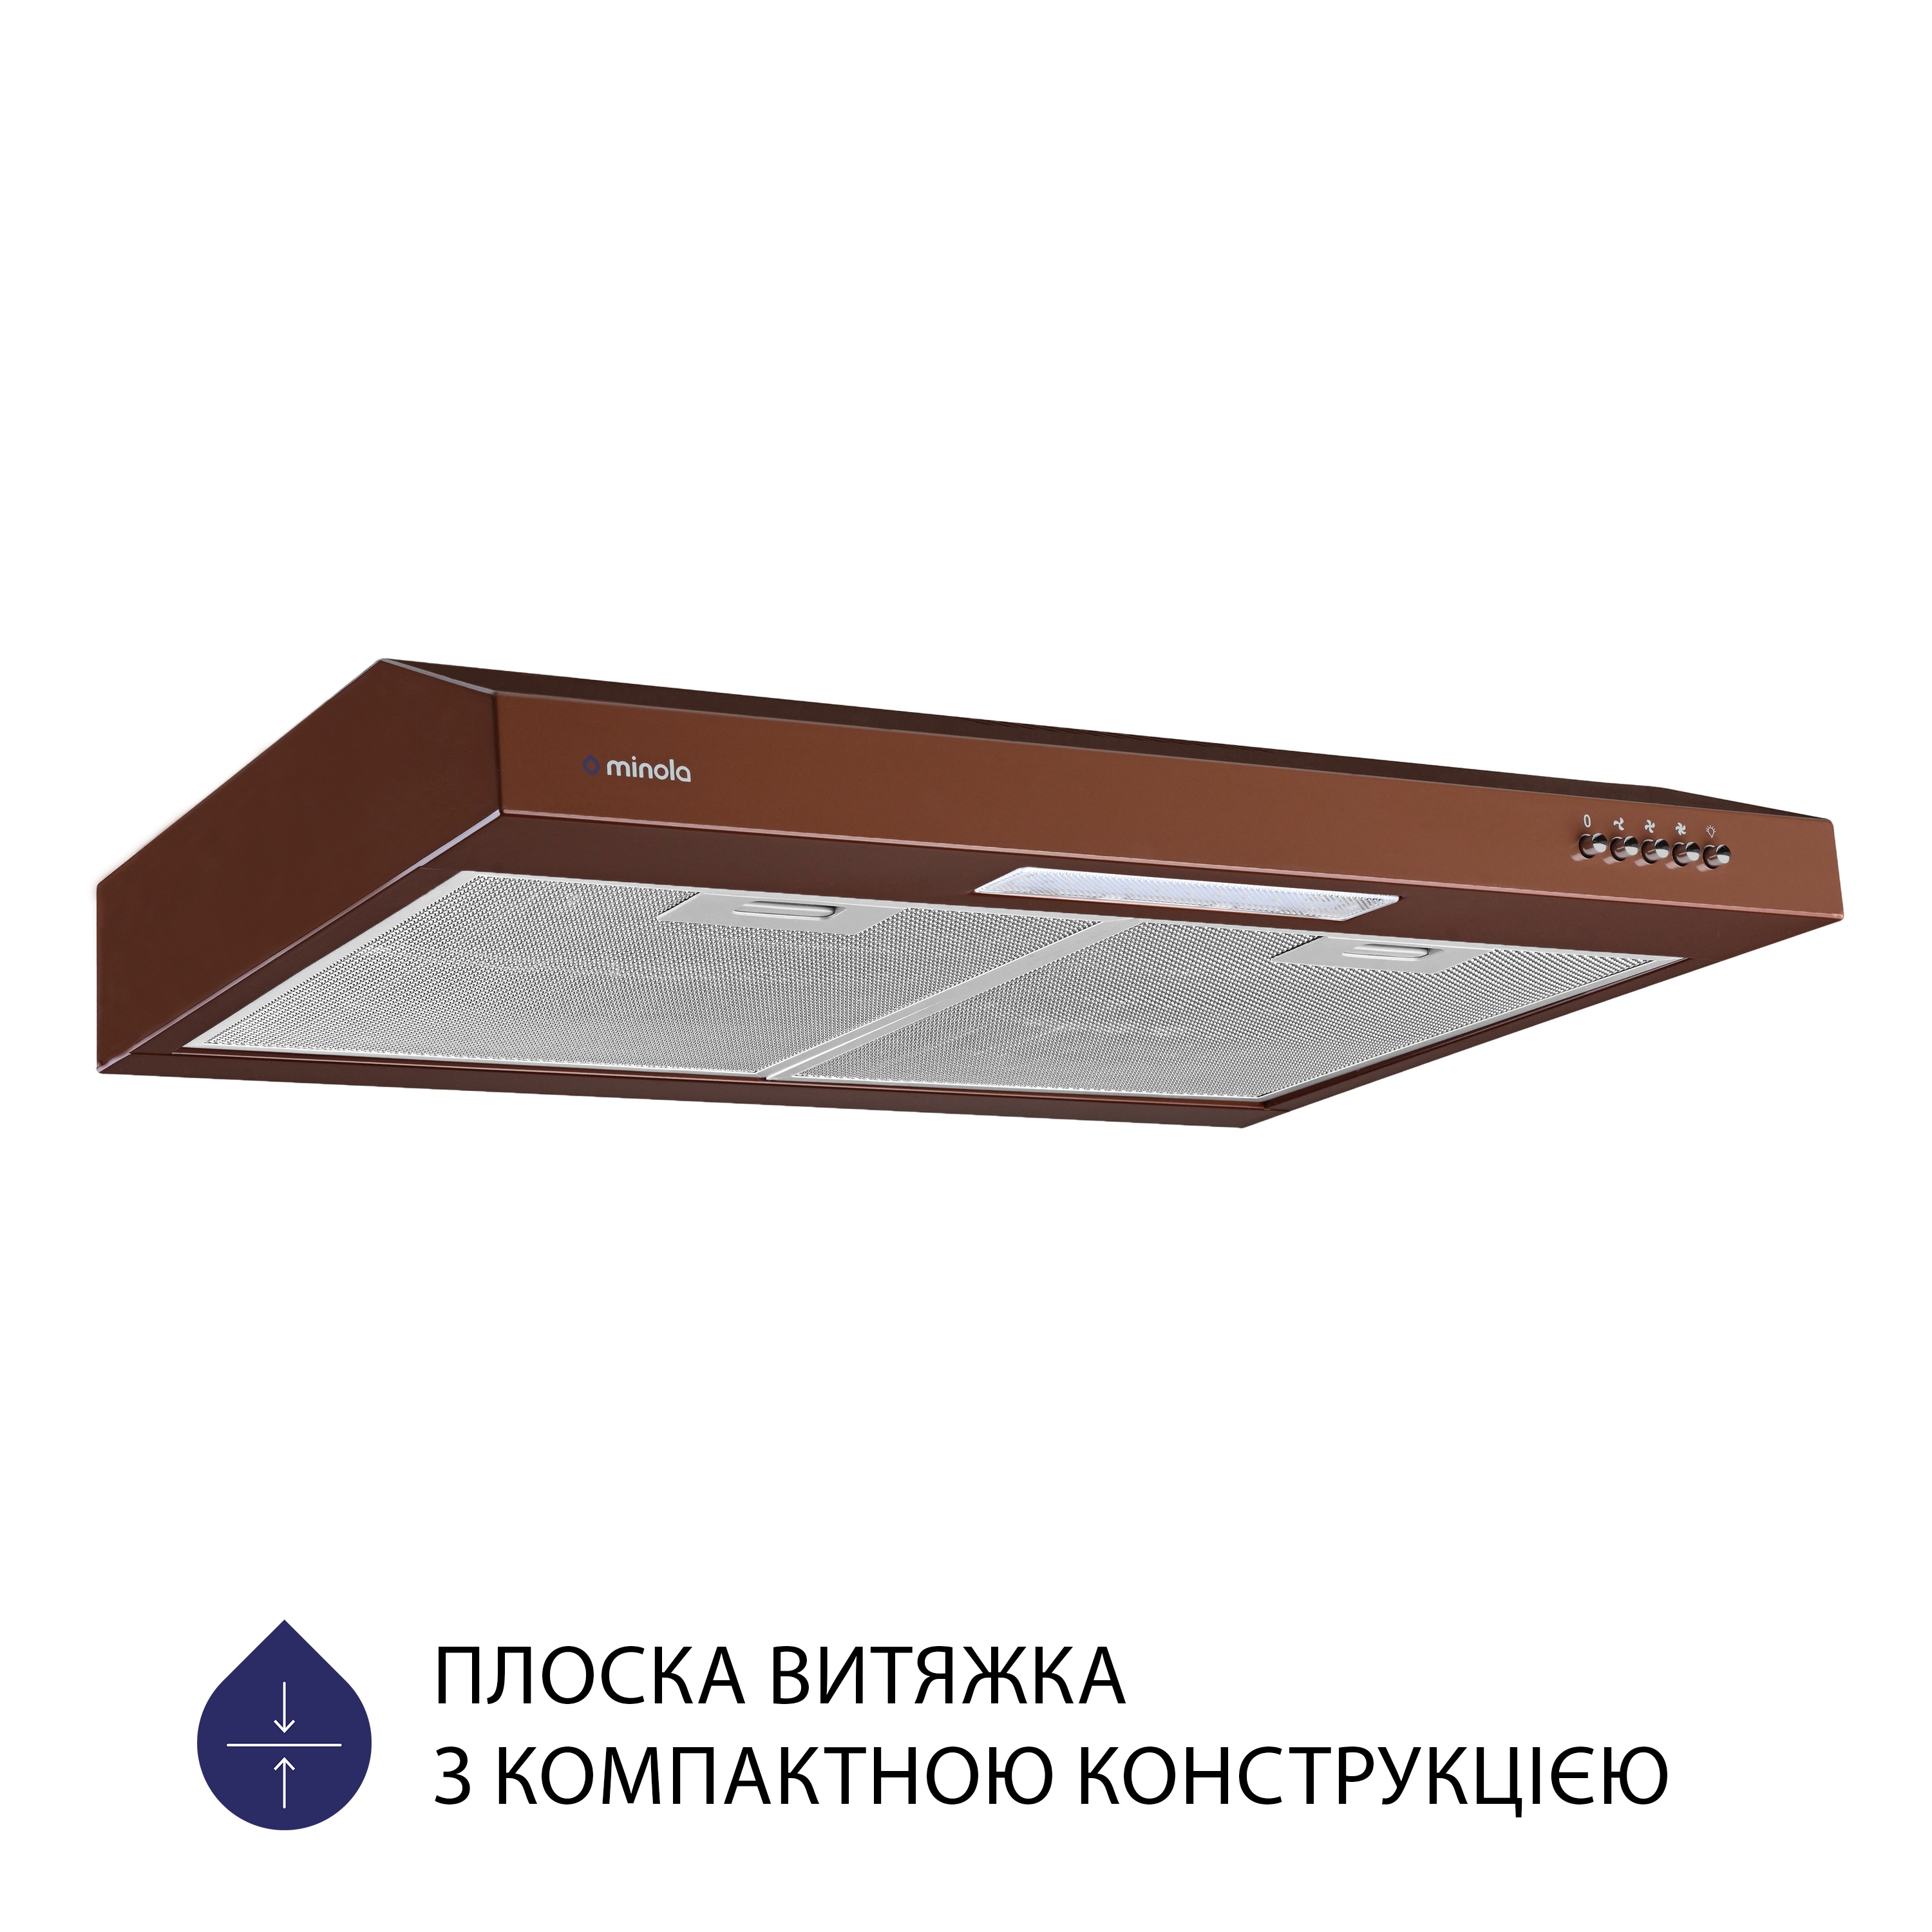 Витяжка кухонная плоская Minola HPL 612 BR цена 2359.00 грн - фотография 2